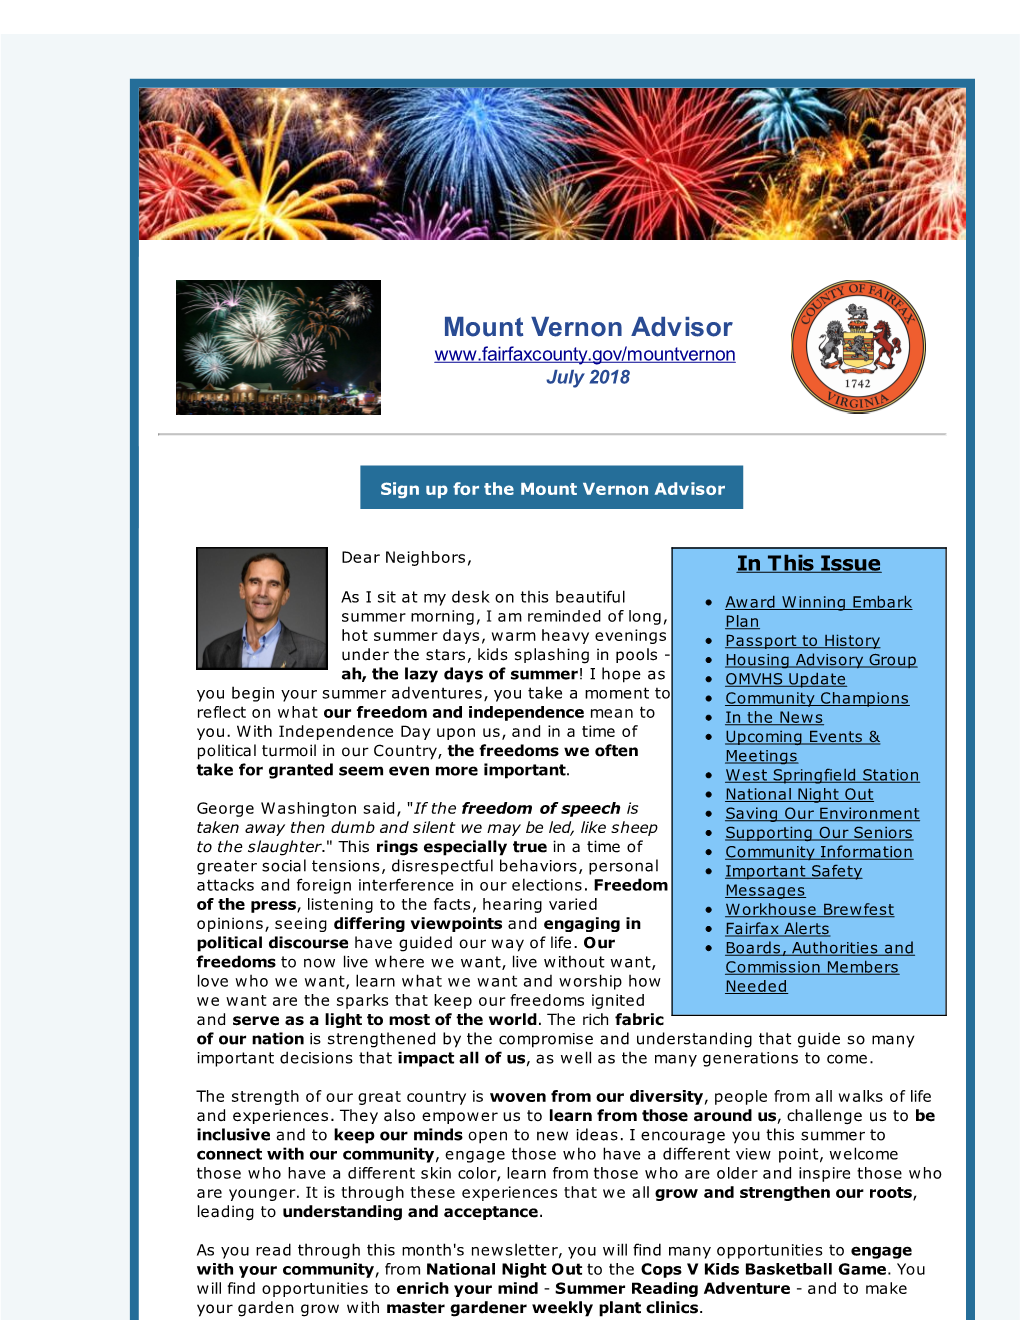 Mount Vernon Advisor July 2018